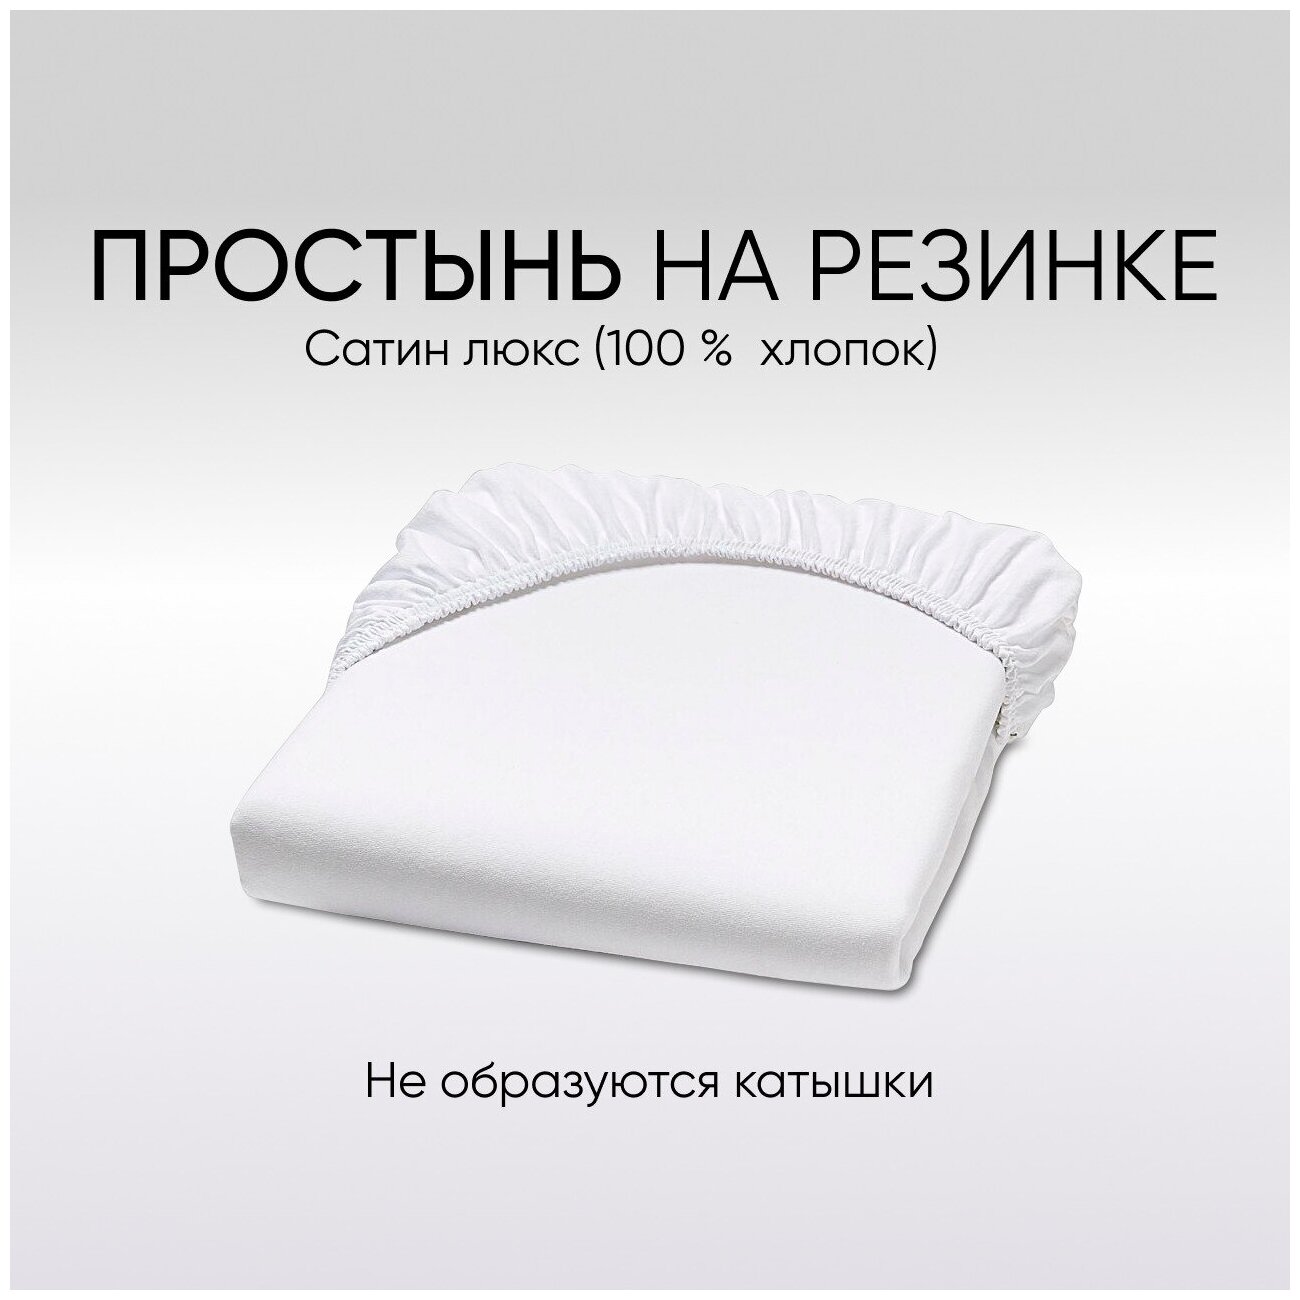 Простыня на резинке, цвет: белый, для овальной кроватки 125*65 см